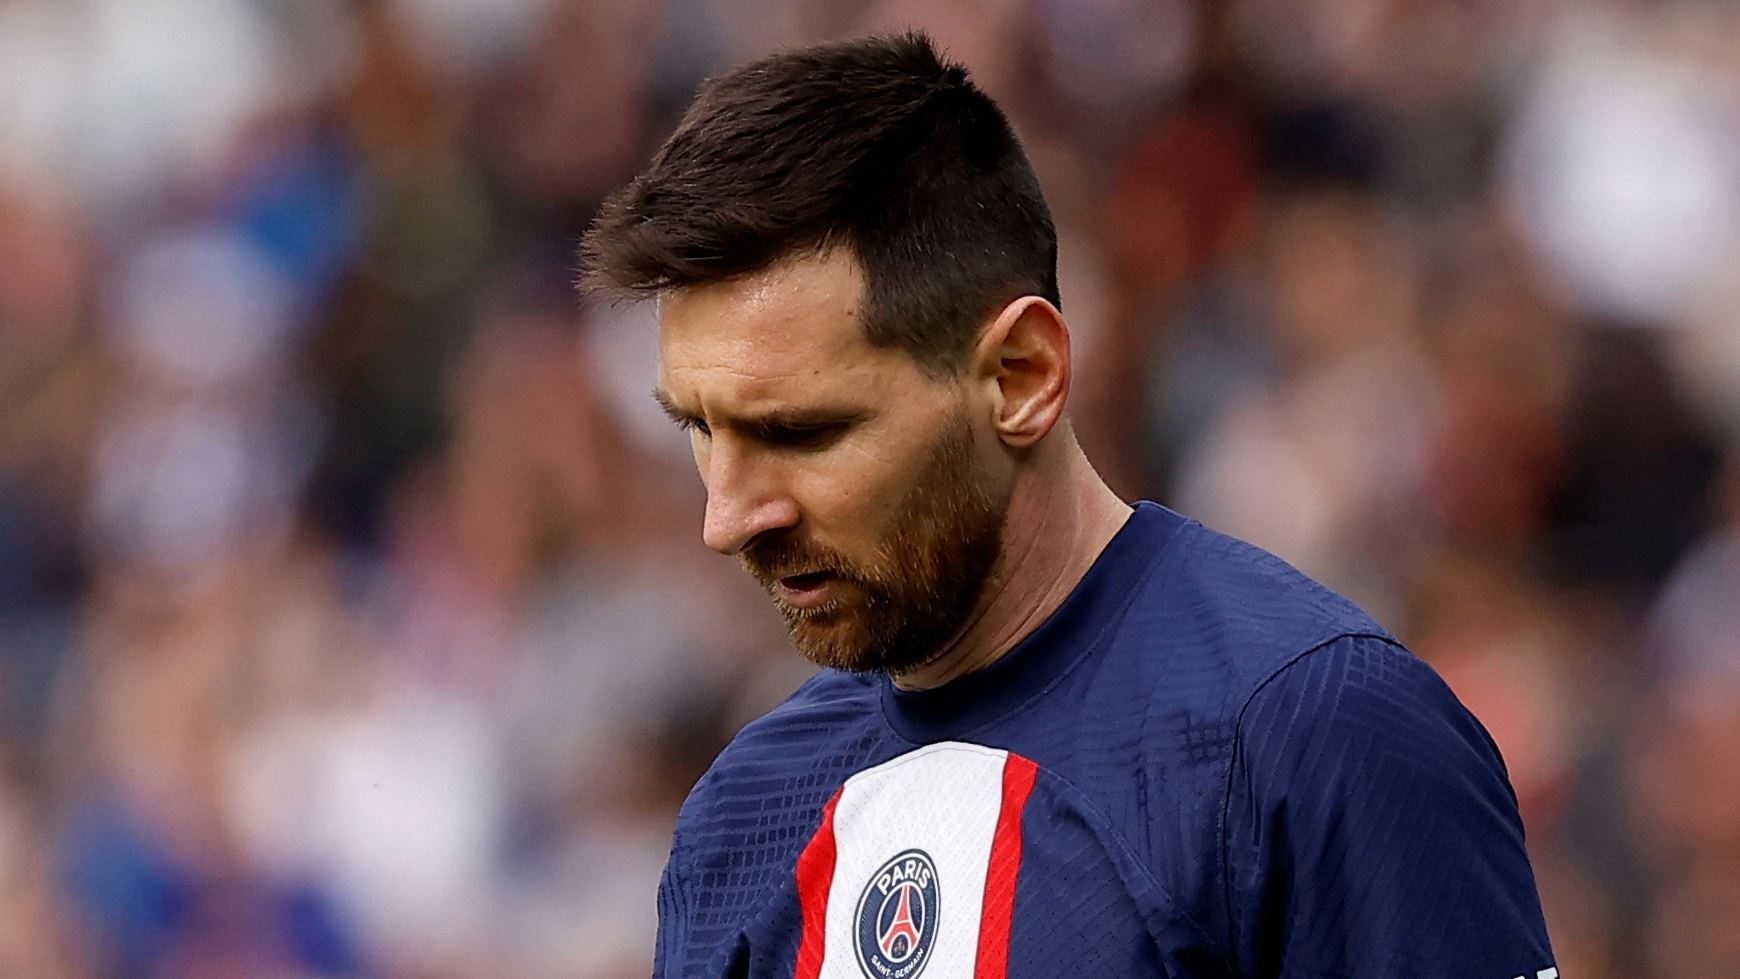 Lionel Messi en los últimos días en el PSG REUTERS/Christian Hartmann/File Photo